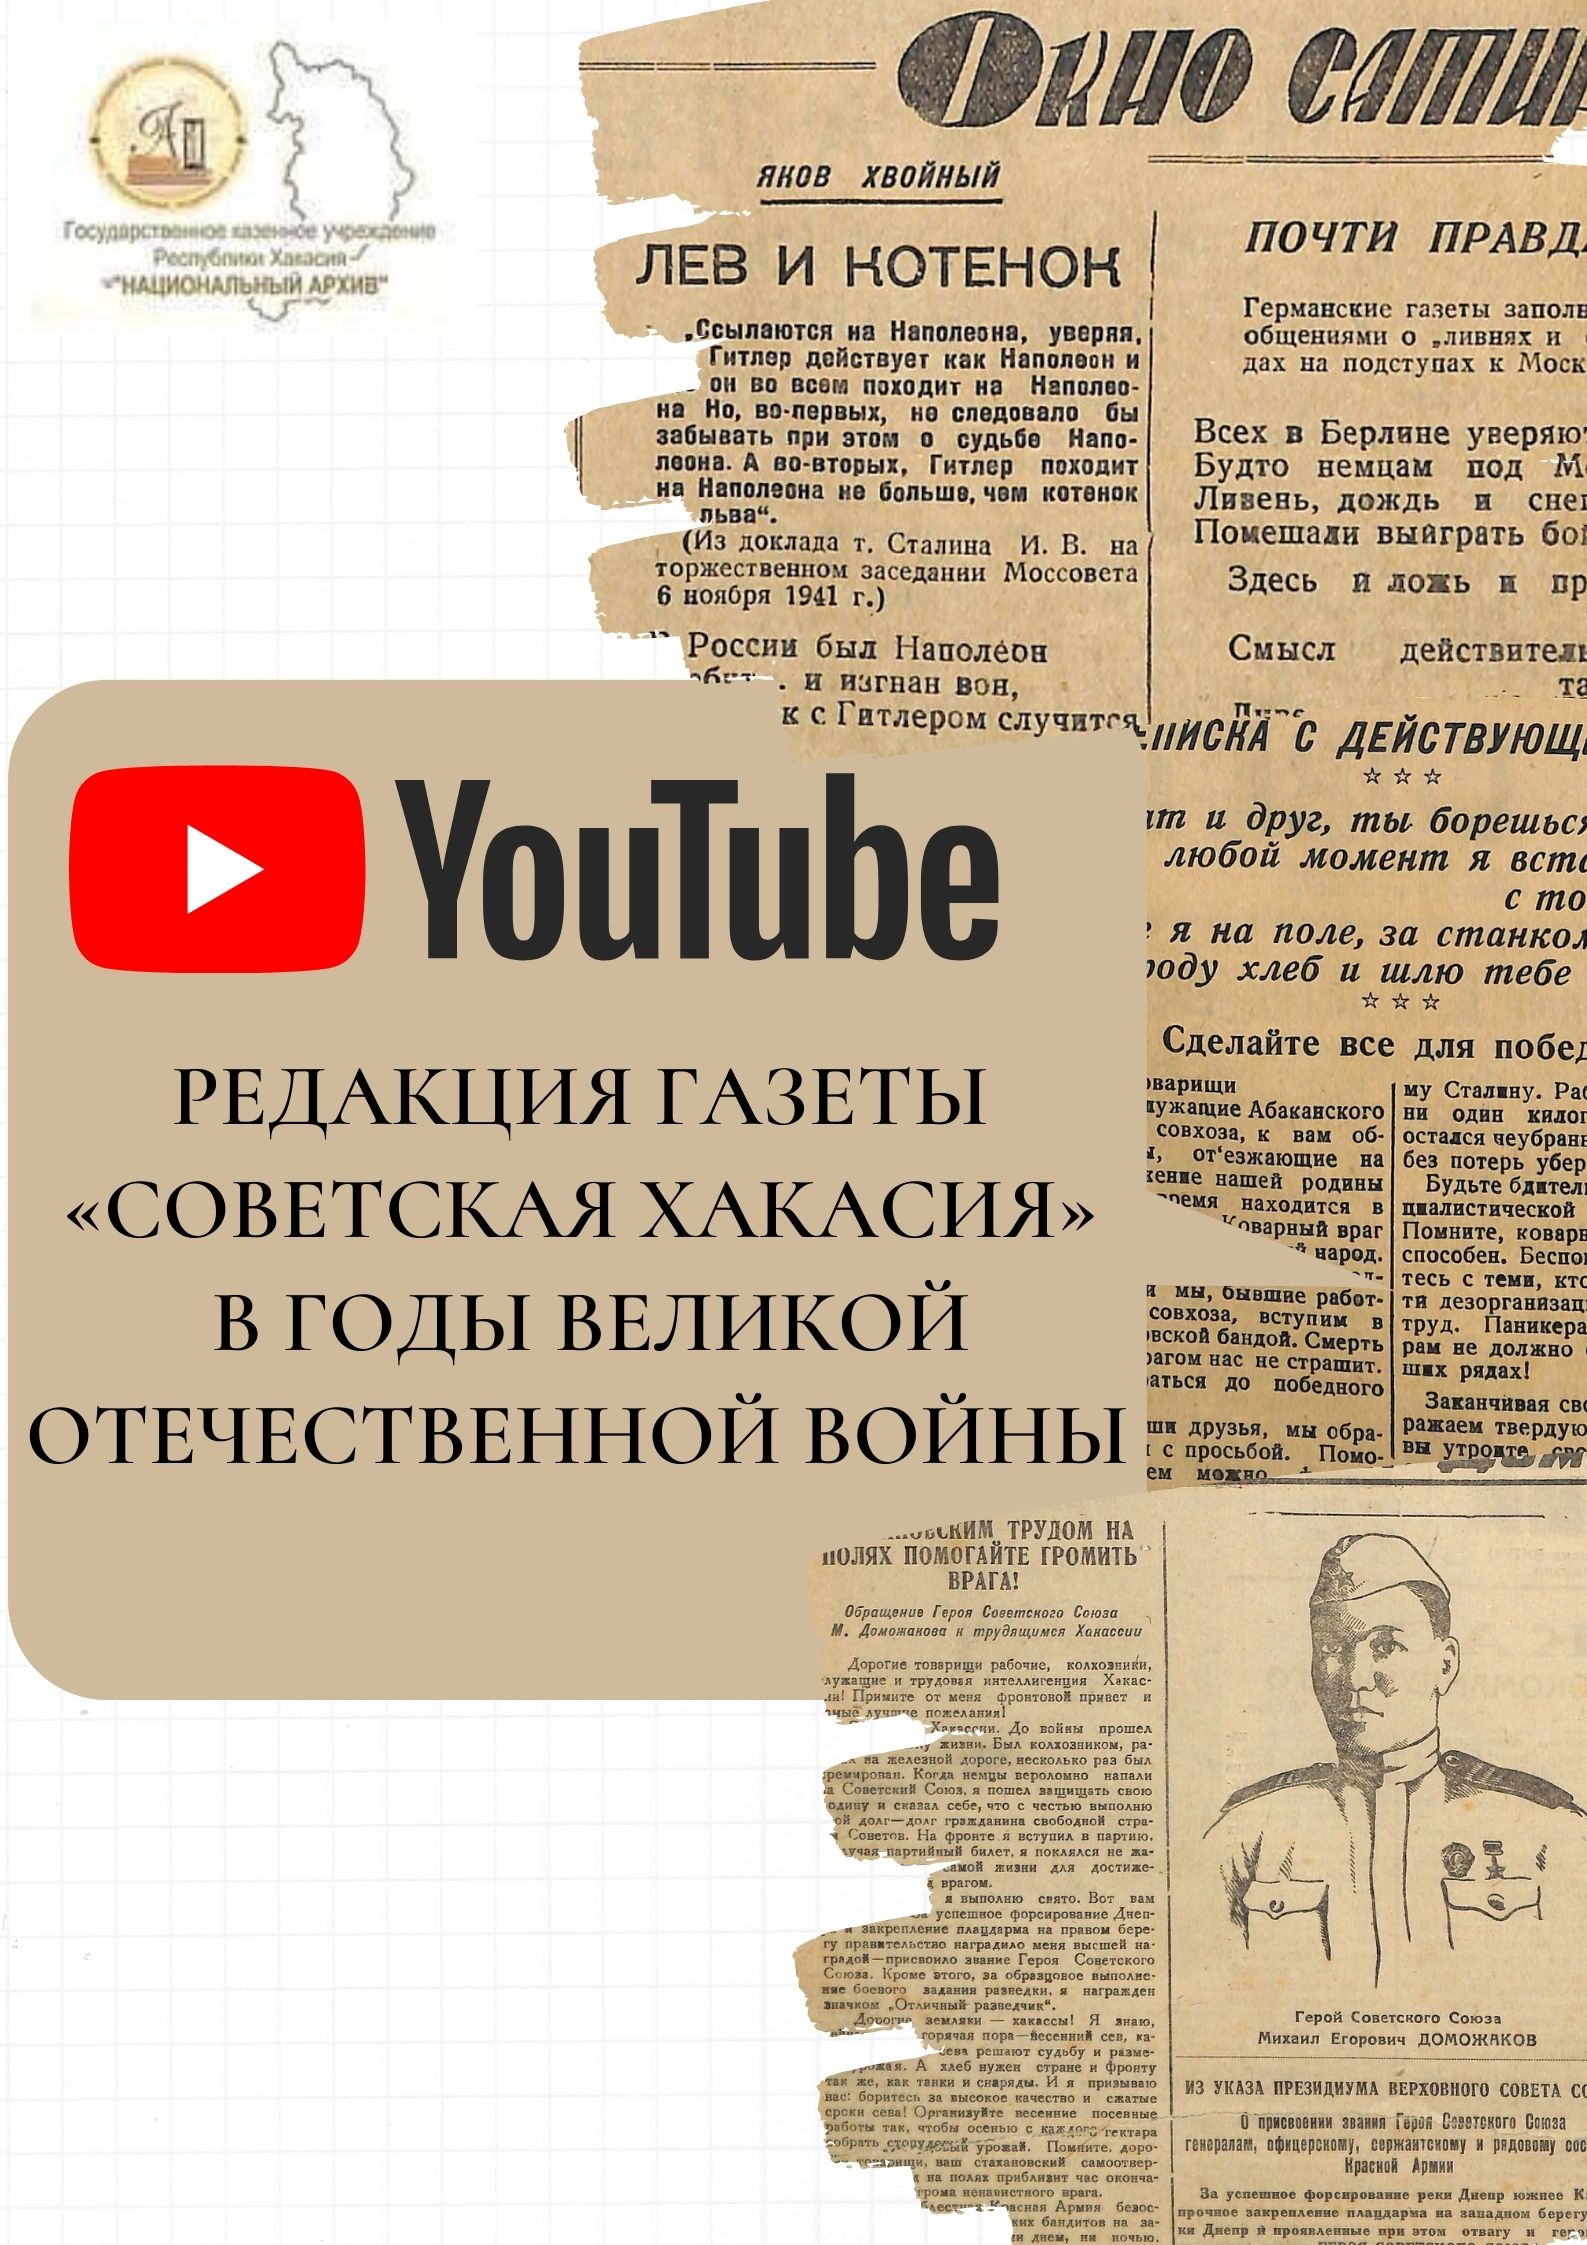 Видеообзор интернет-выставки, посвященной редакции газеты «Советская Хакасия» в годы Великой Отечественной войны, доступен на Youtube